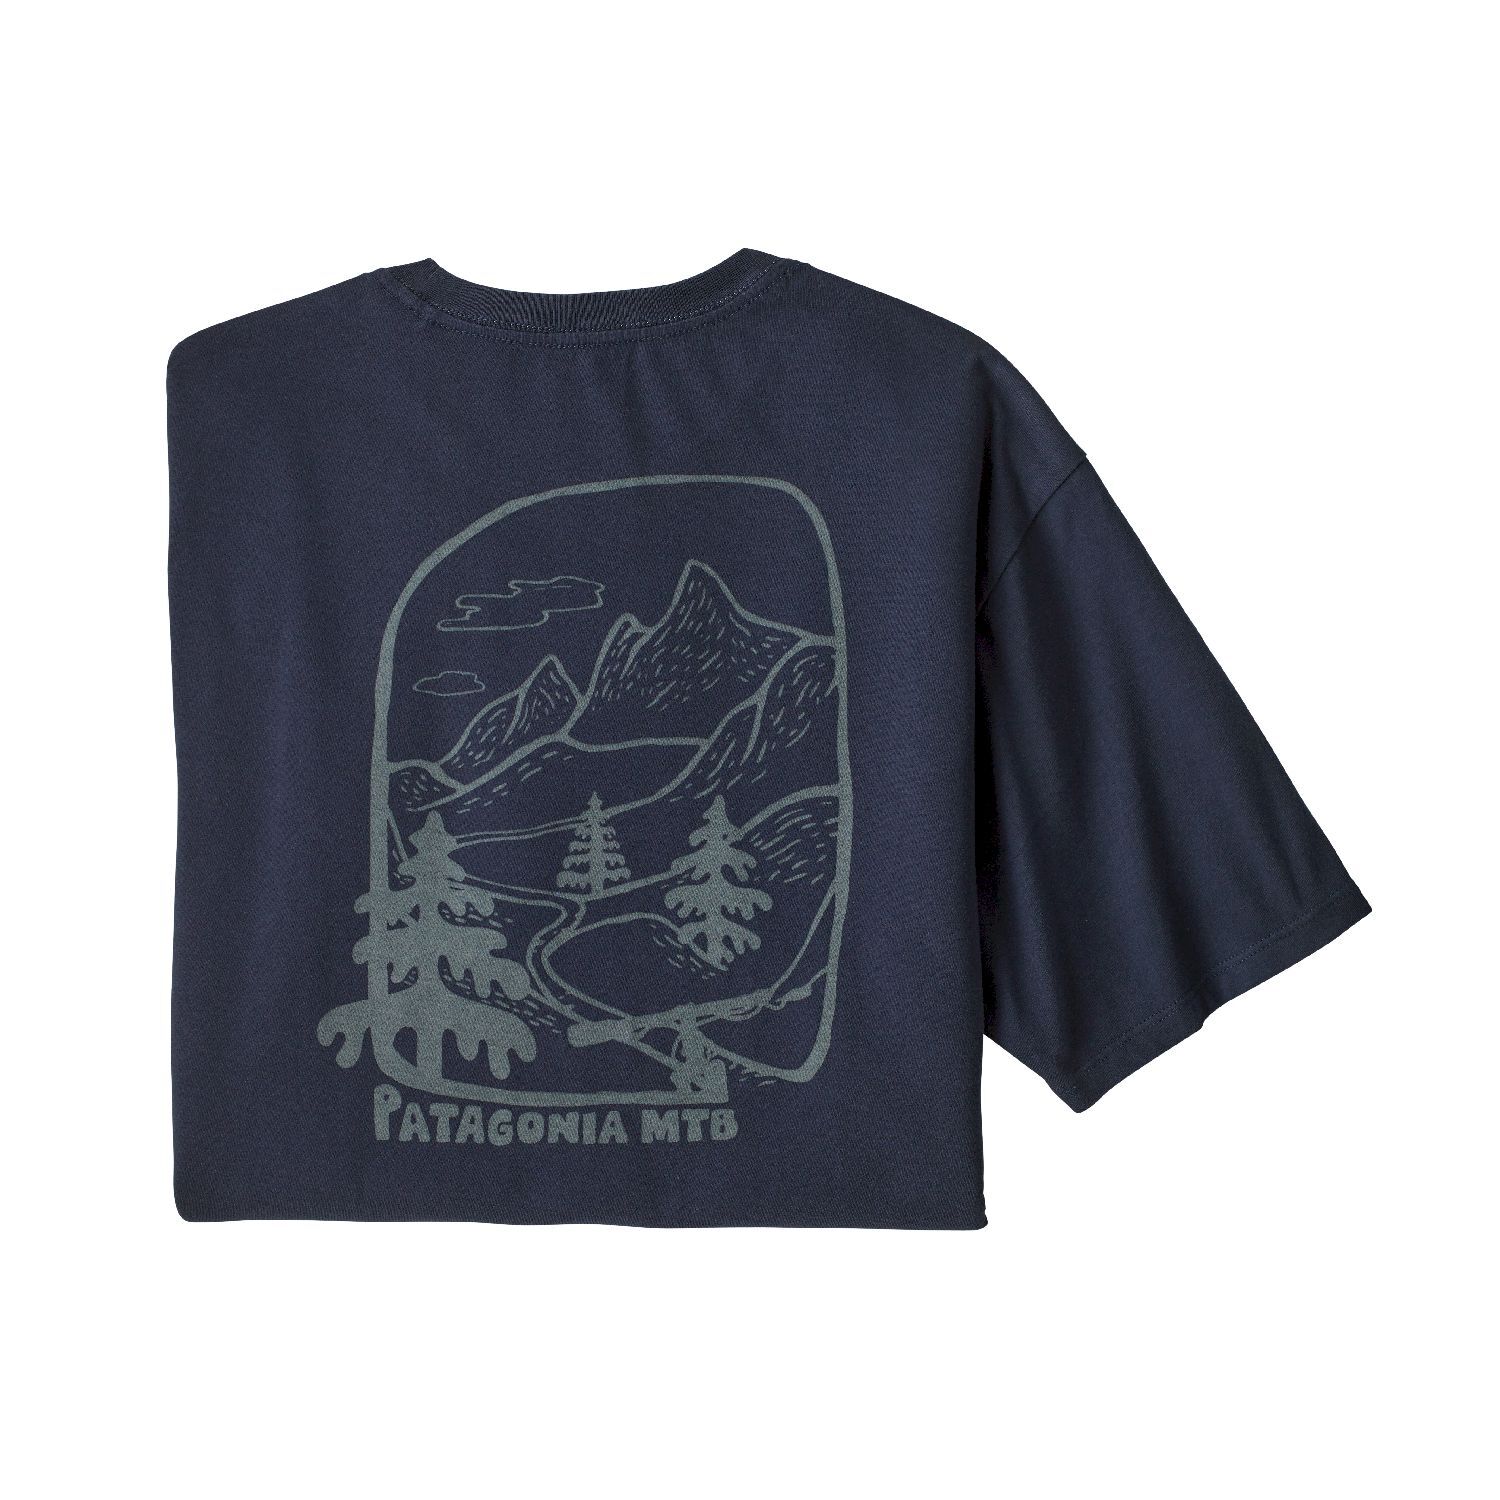 Patagonia Roam the Dirt Organic - T-shirt - Heren